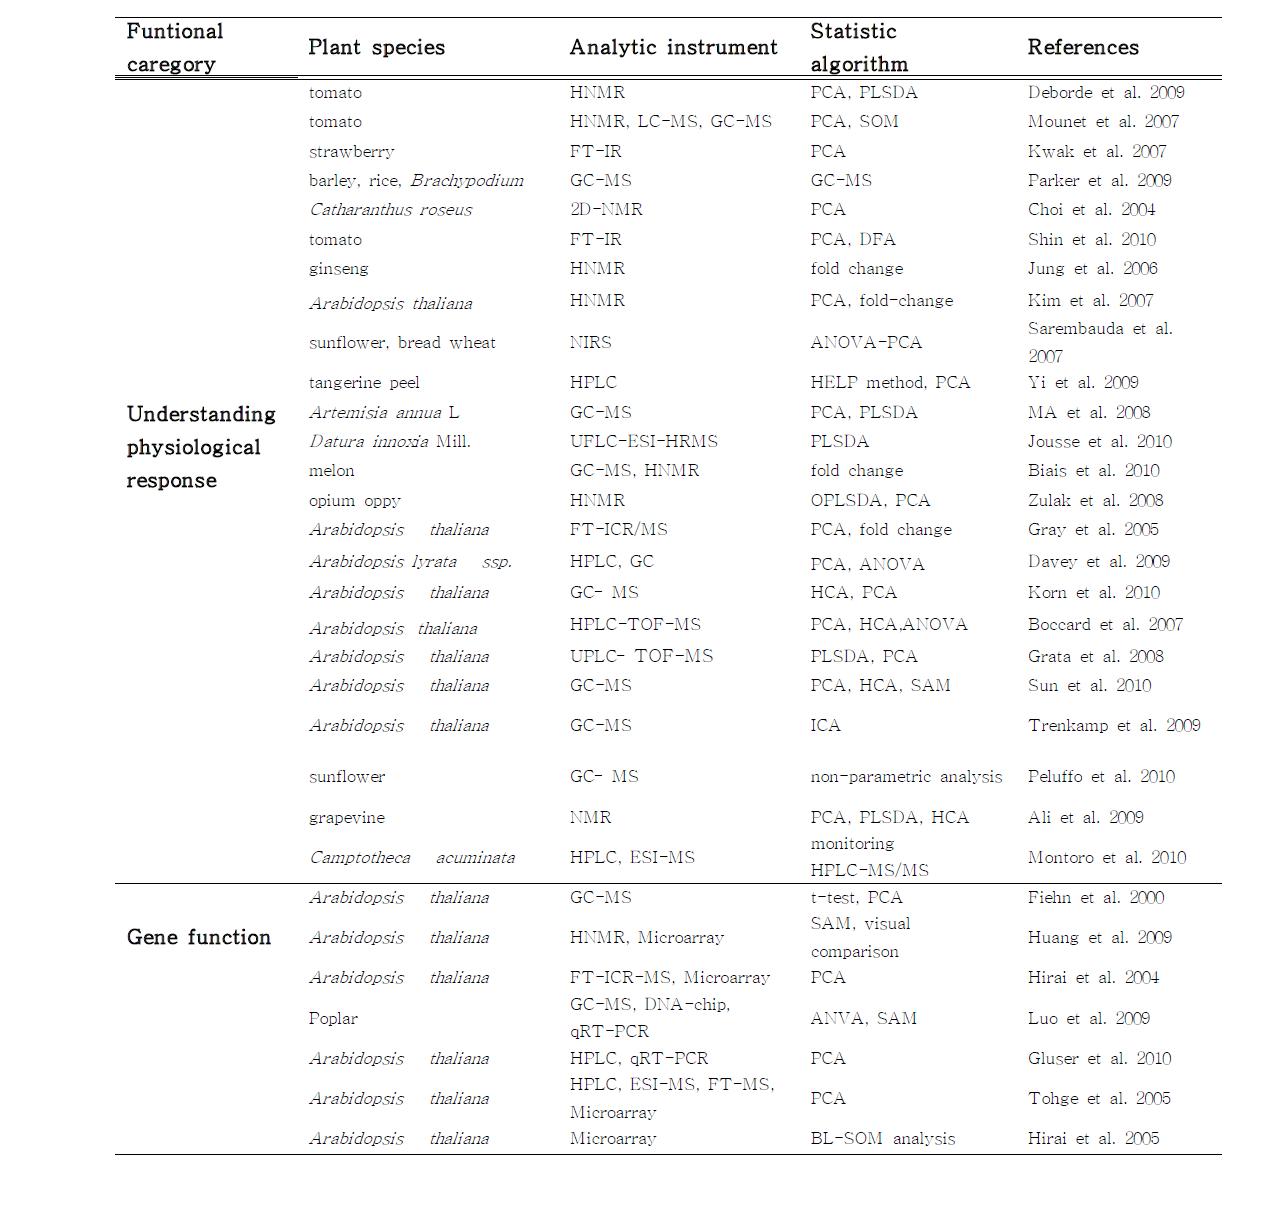 Major application fields for plant metabolomics